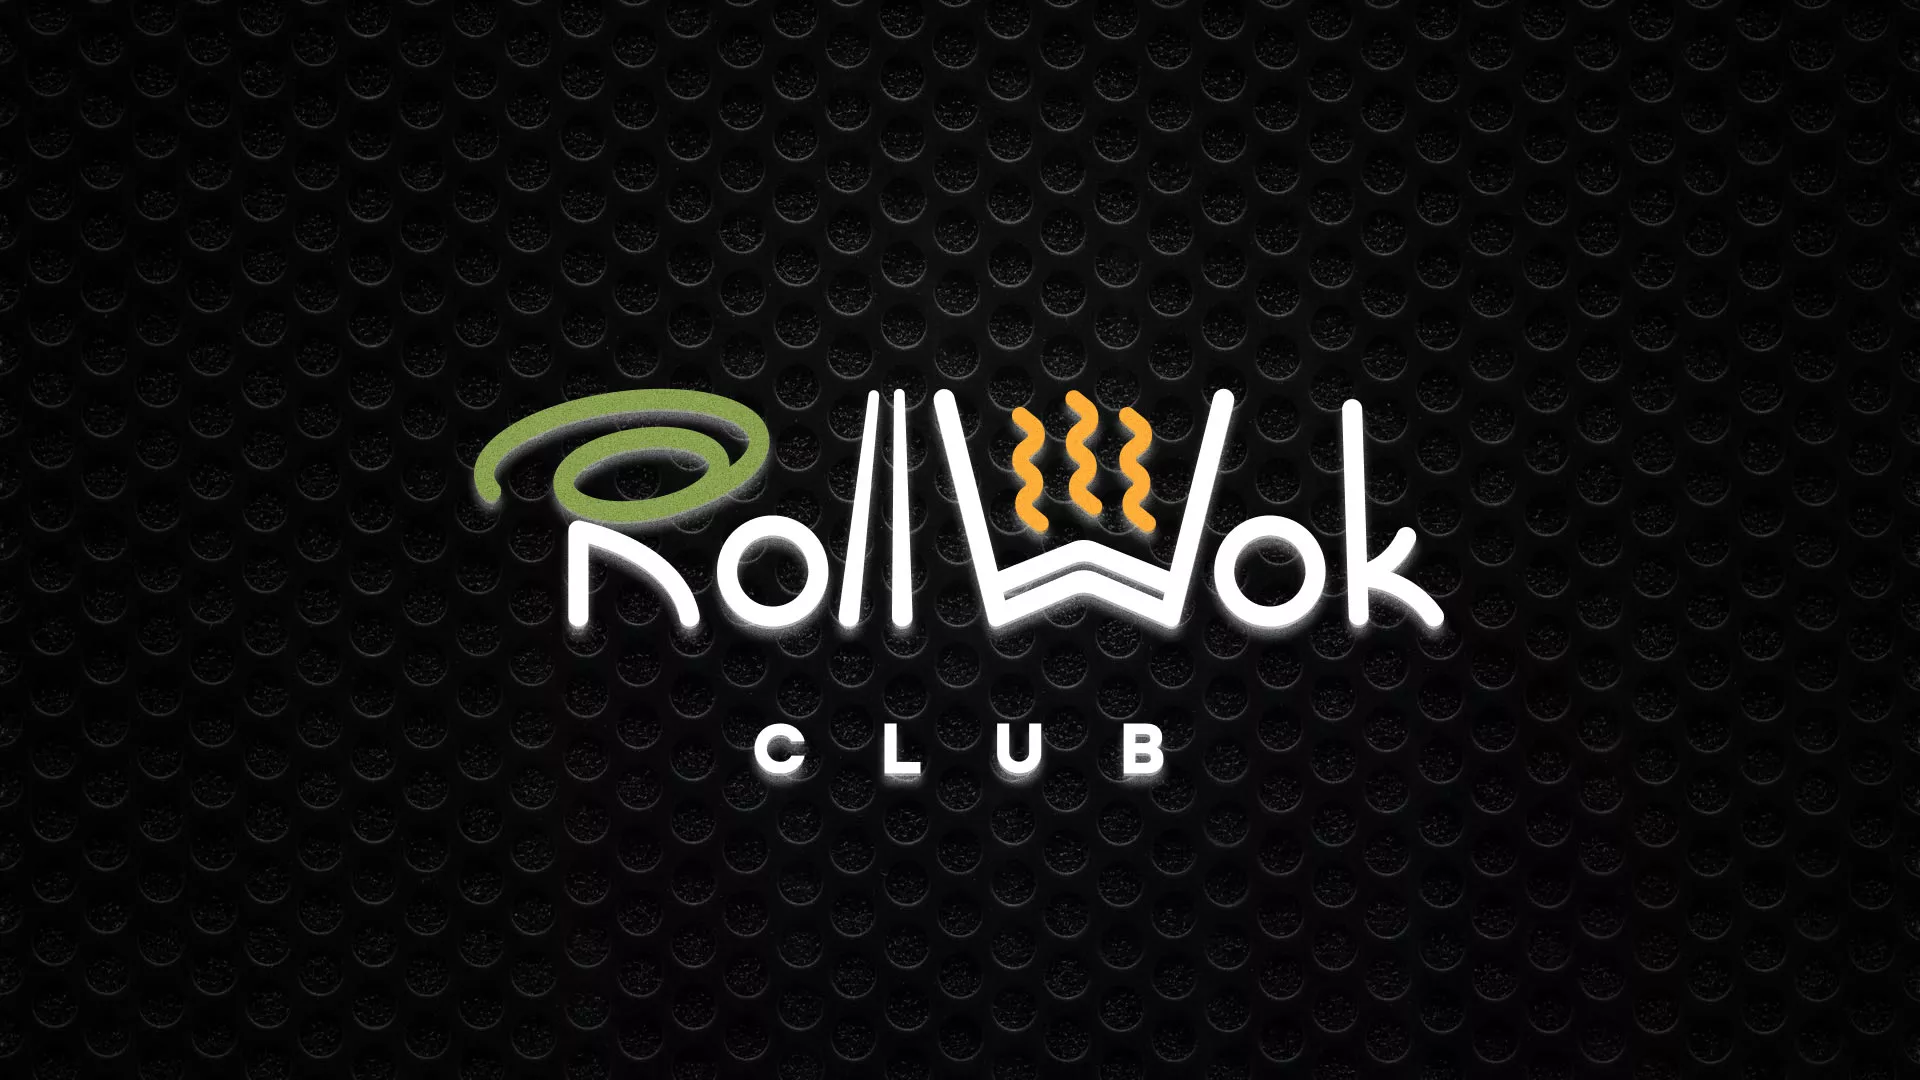 Брендирование торговых точек суши-бара «Roll Wok Club» в Барыше